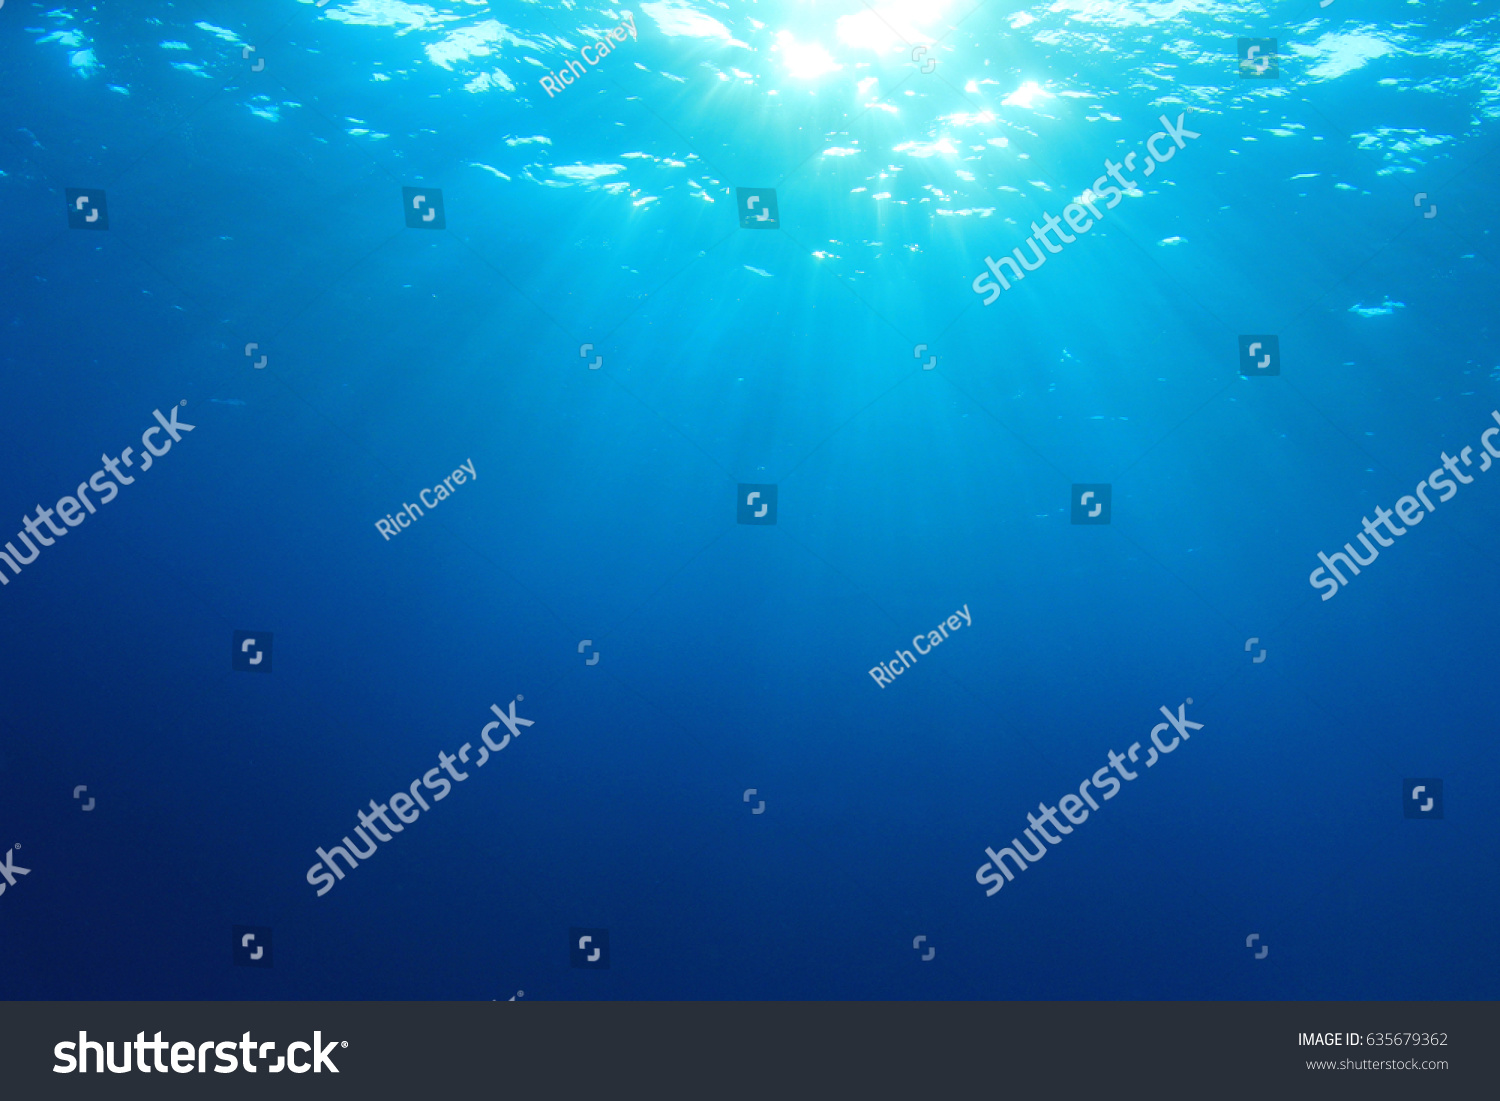 Underwater background #635679362